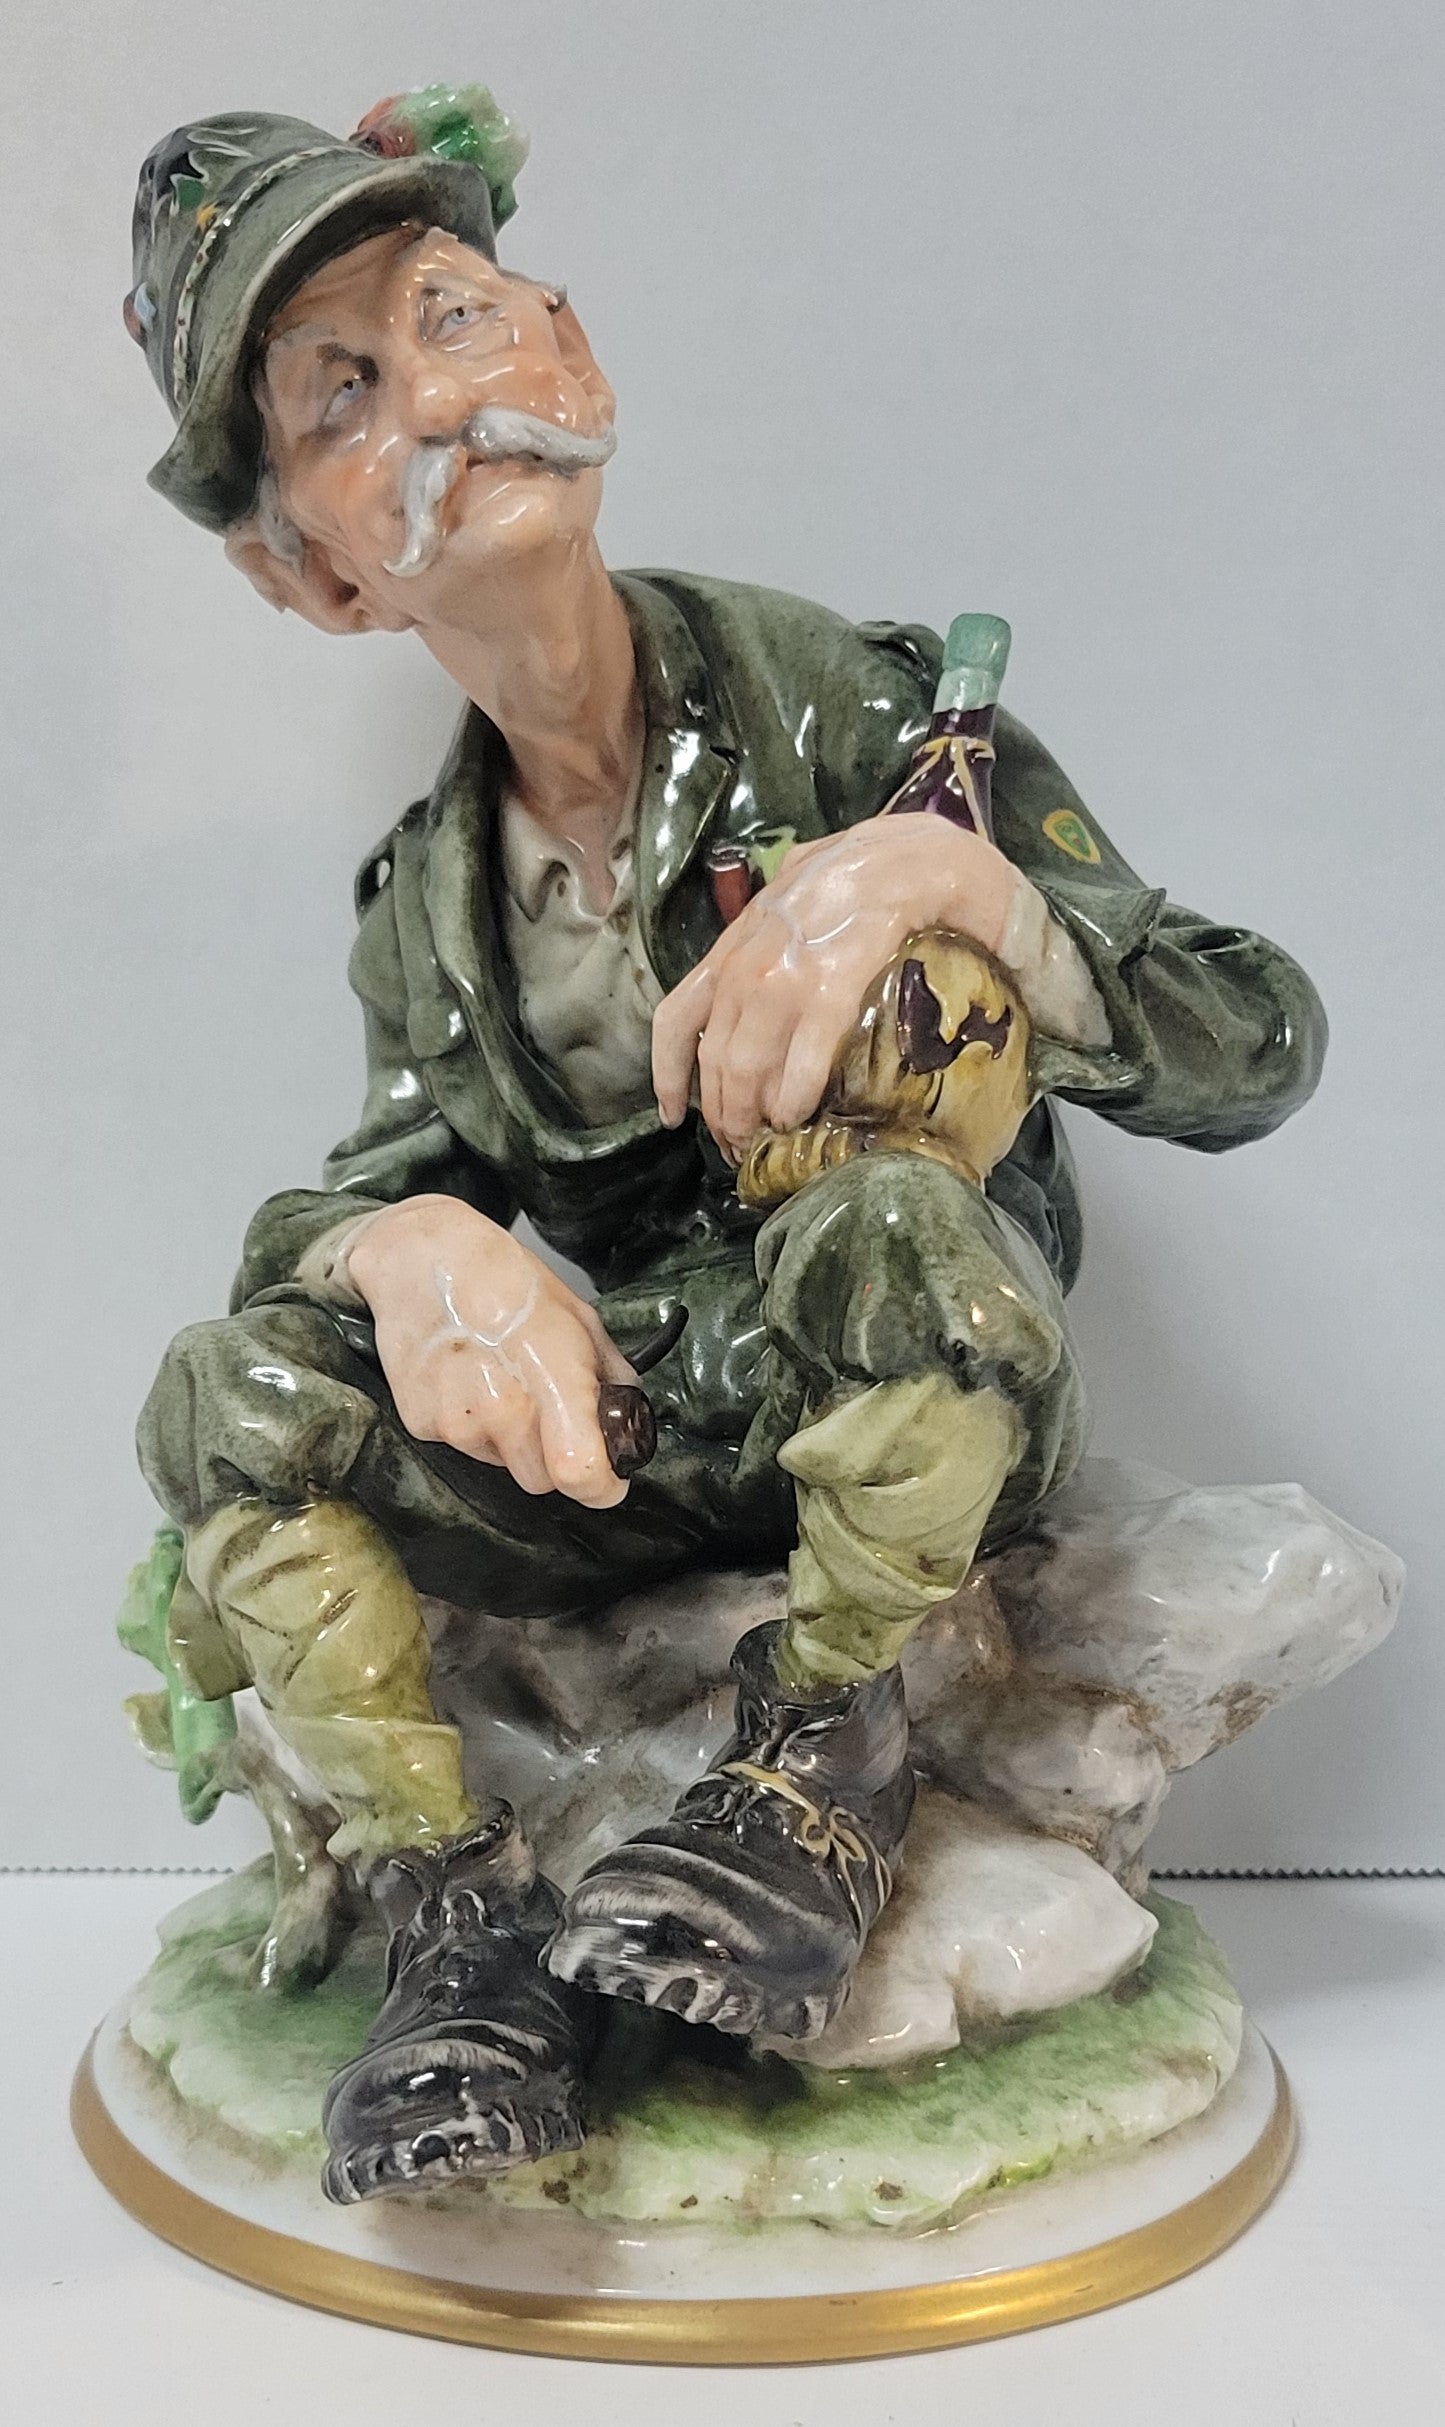 Rare Capodimonte Figurine by B. Redaelli